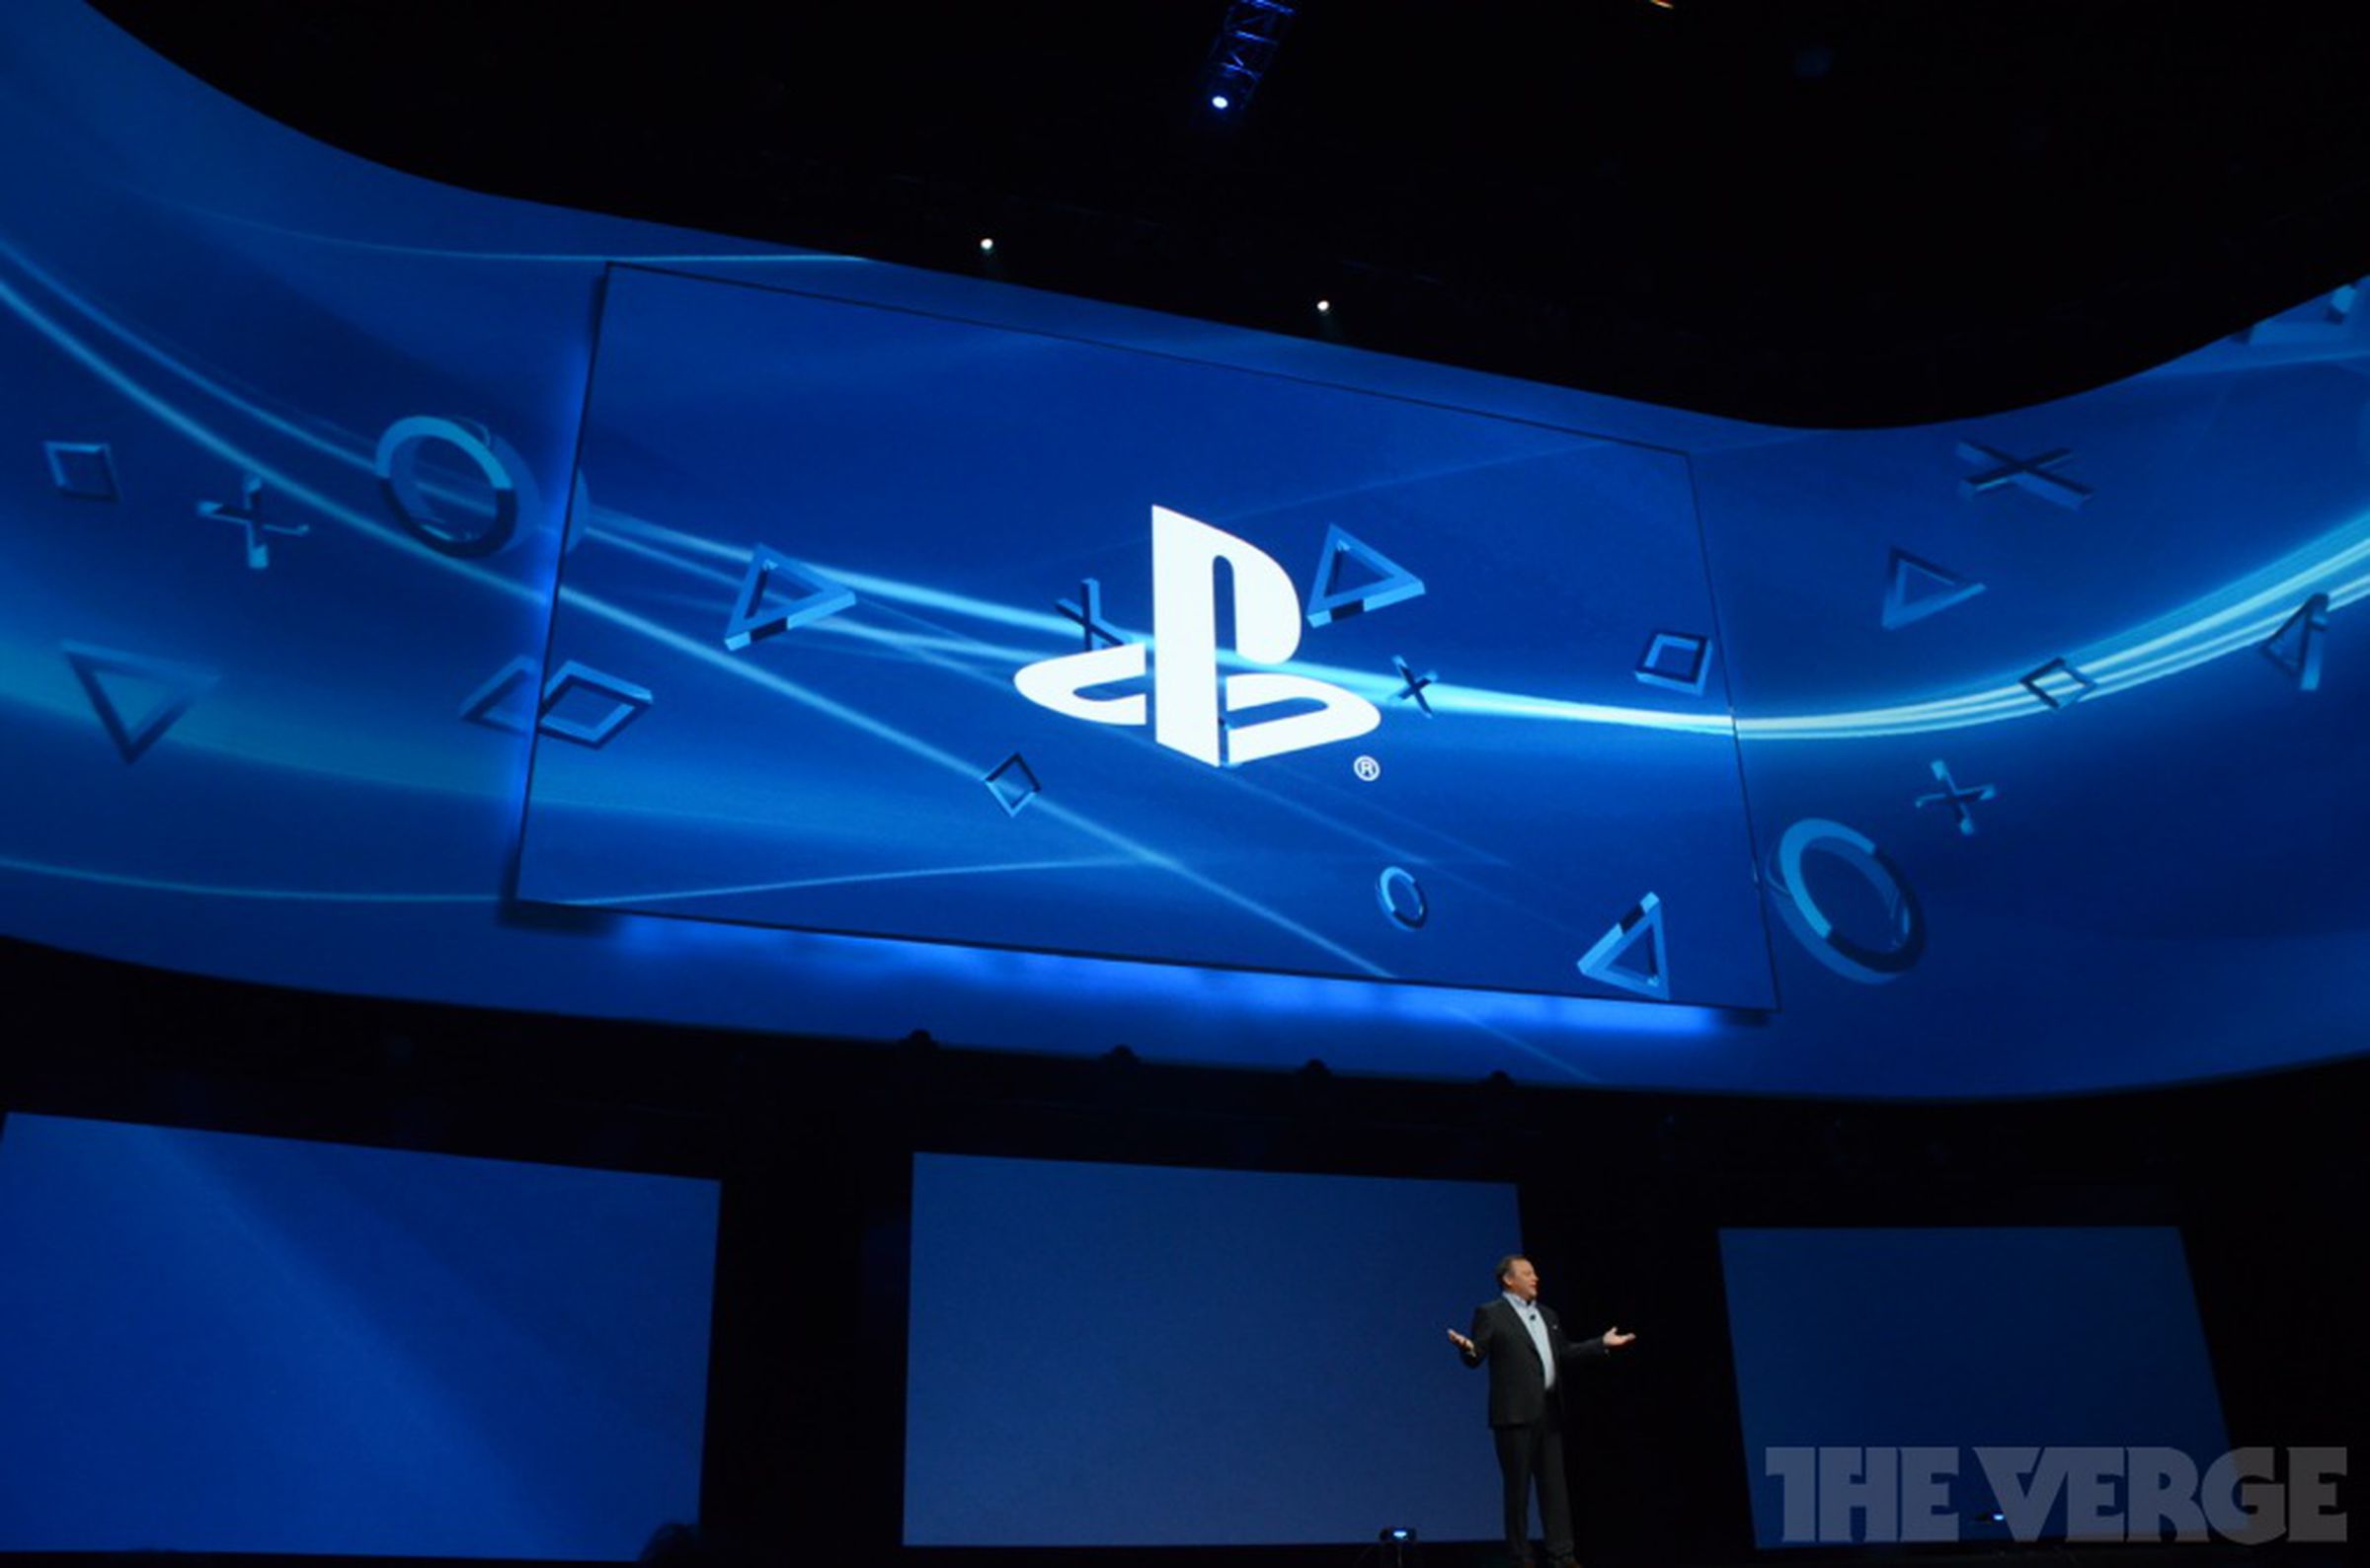 PS4 E3 event